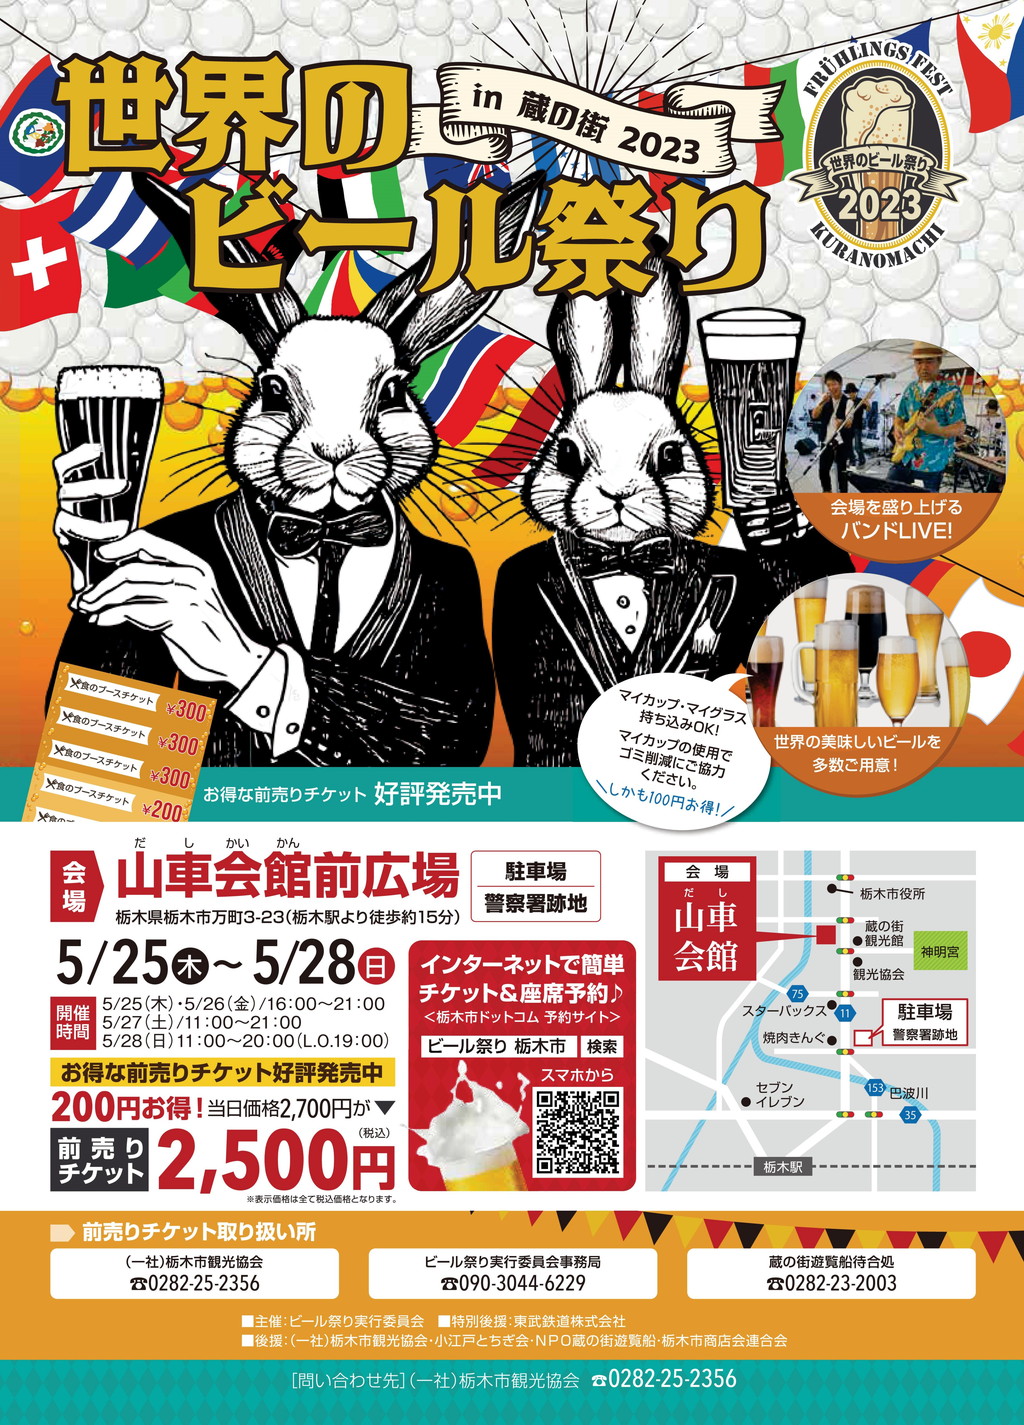 栃木市 世界のビール祭り in 蔵の街 2023 -春のビール祭り-